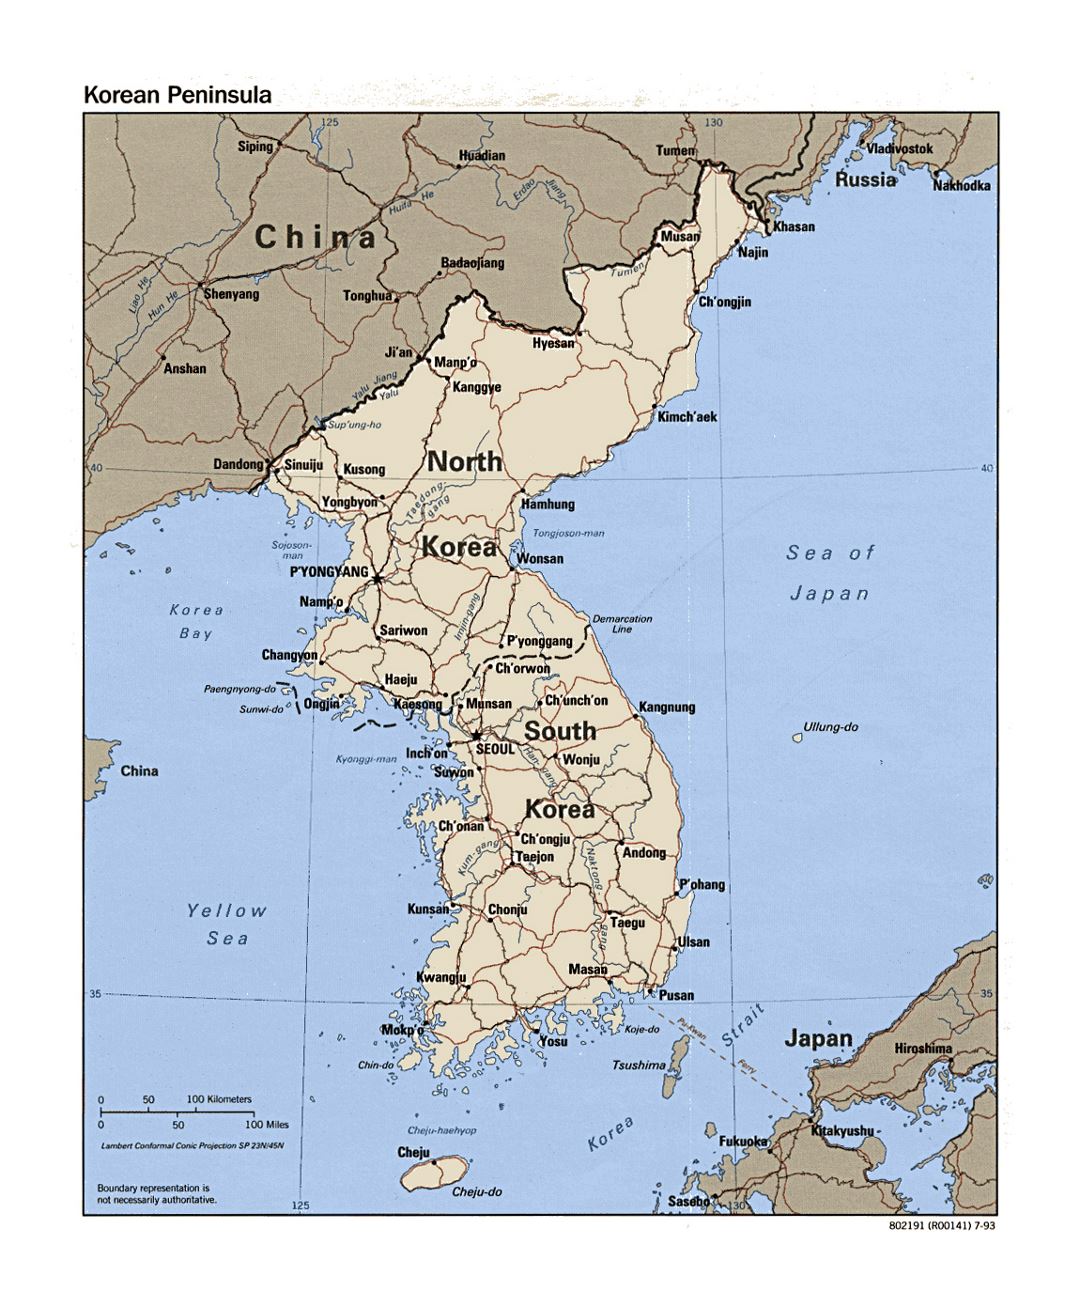 Детальная политическая карта Корейского полуострова с дорогами, железными дорогами и крупными городами - 1993